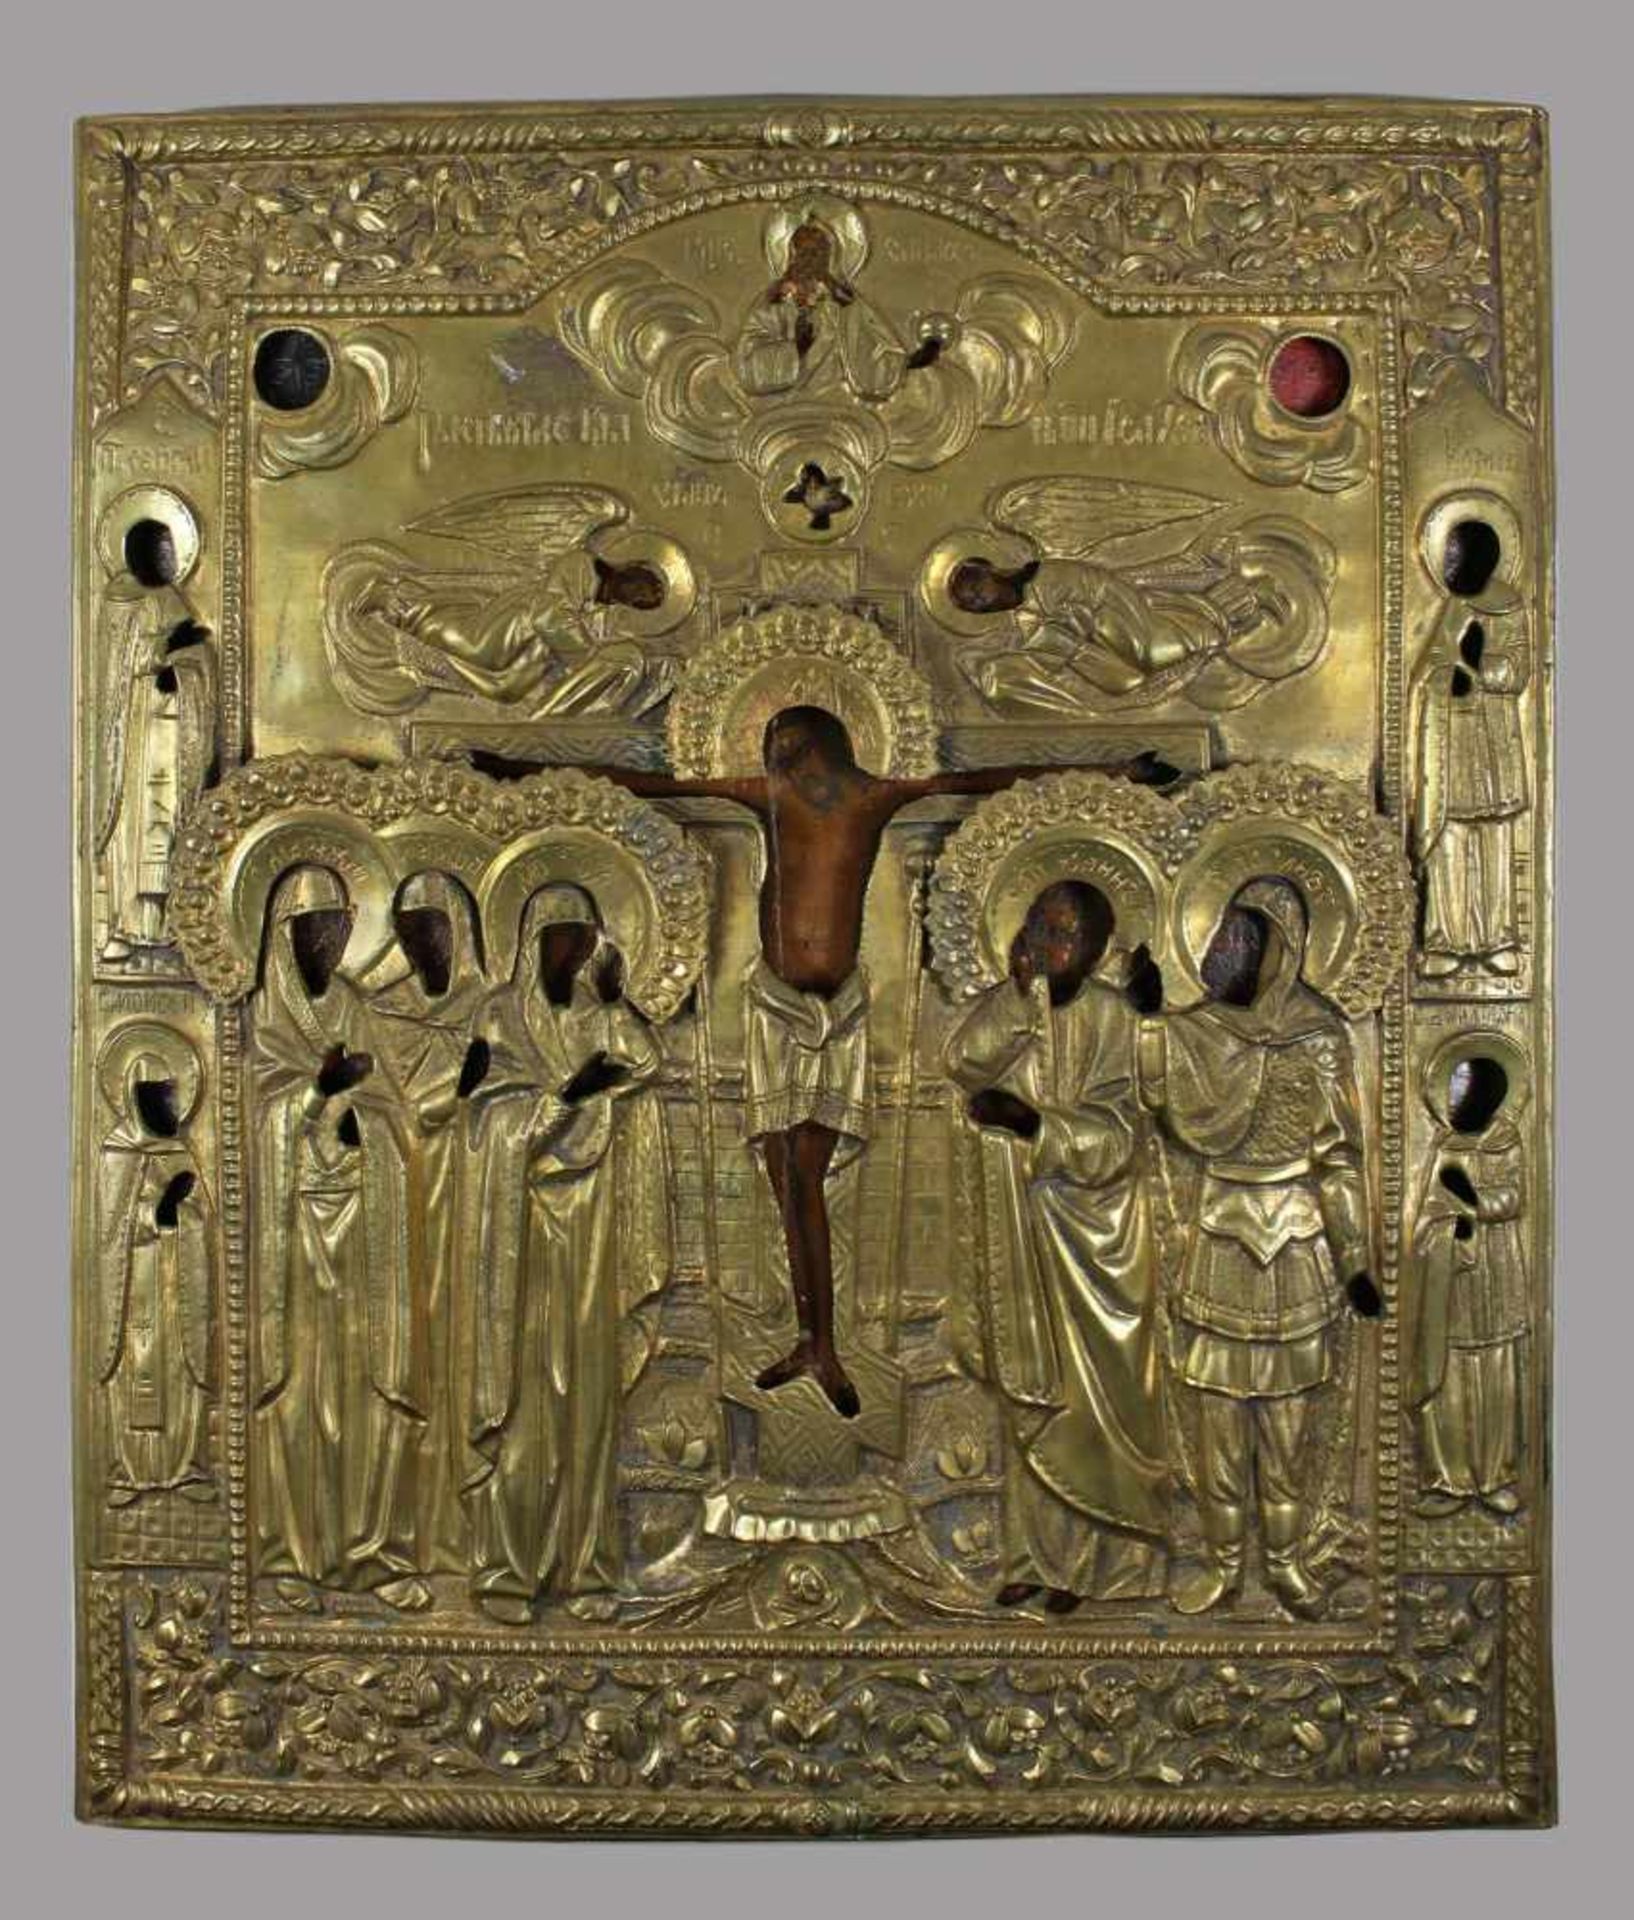 Kreuzigung Christi, Ikone mit Messingoklad, Russland, 19. Jh., Holztafel aus zwei Teilen mit